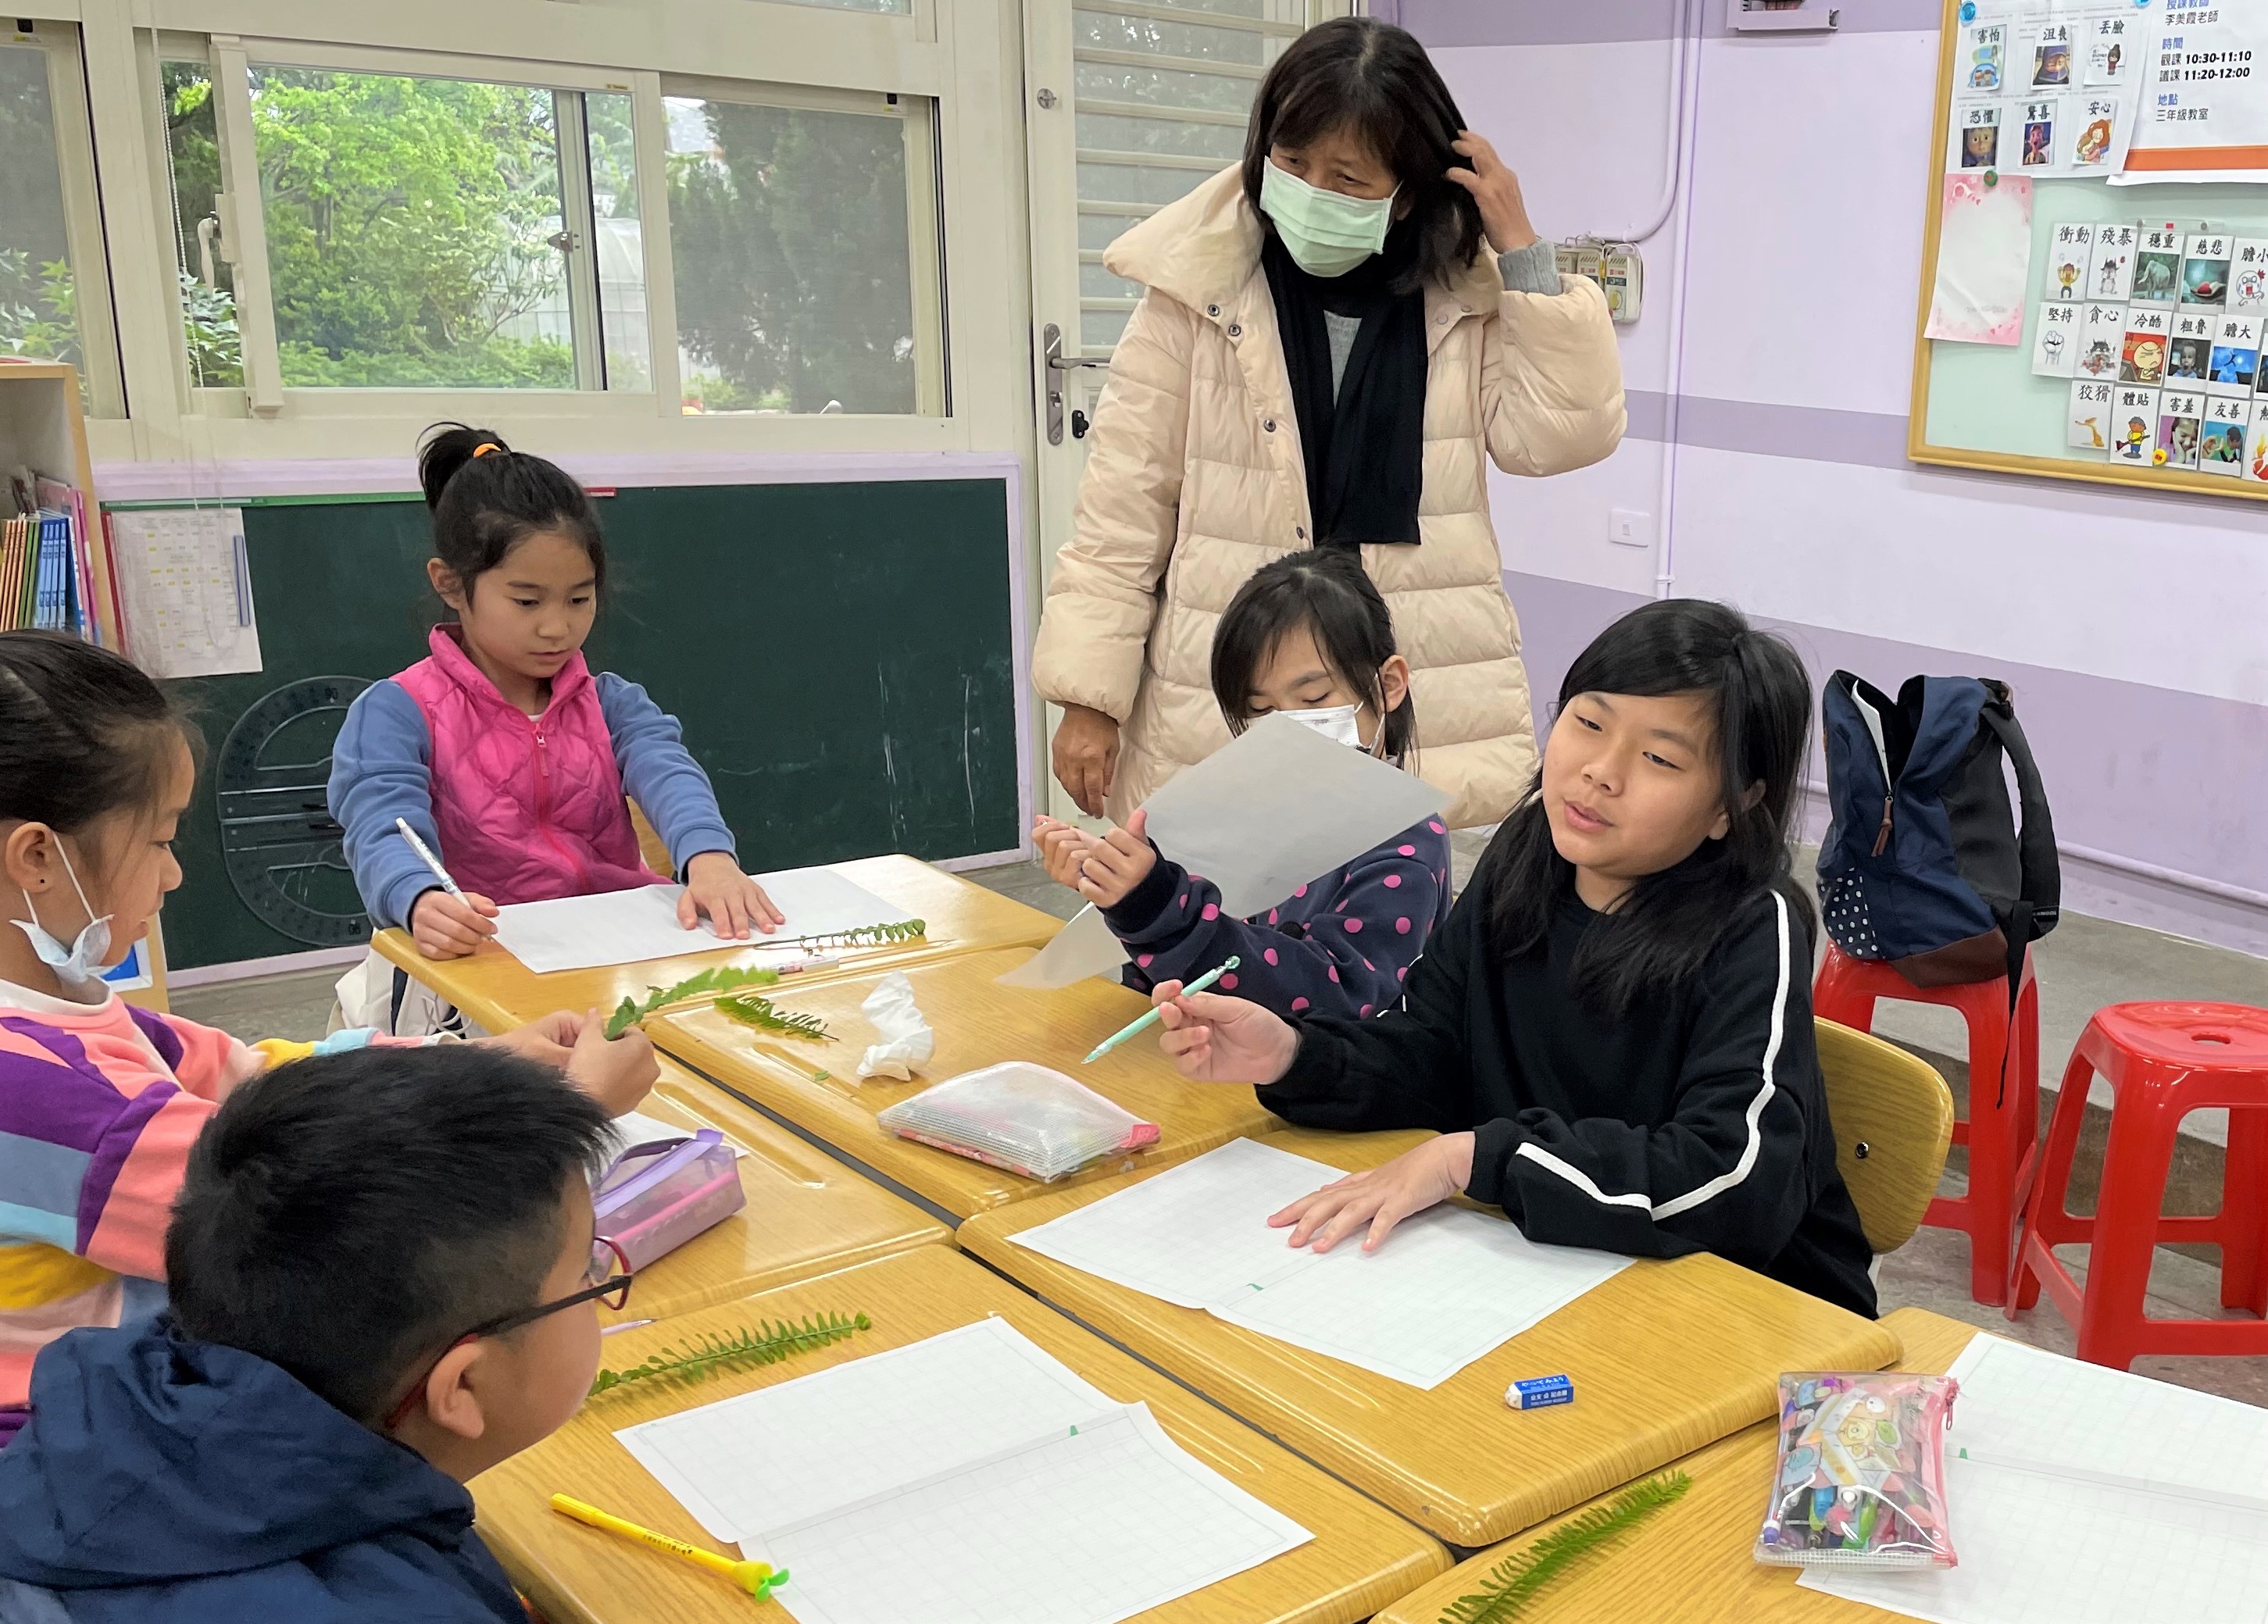 2.興華國小不同年級生透過對話分享想法進行閱讀寫作.jpg